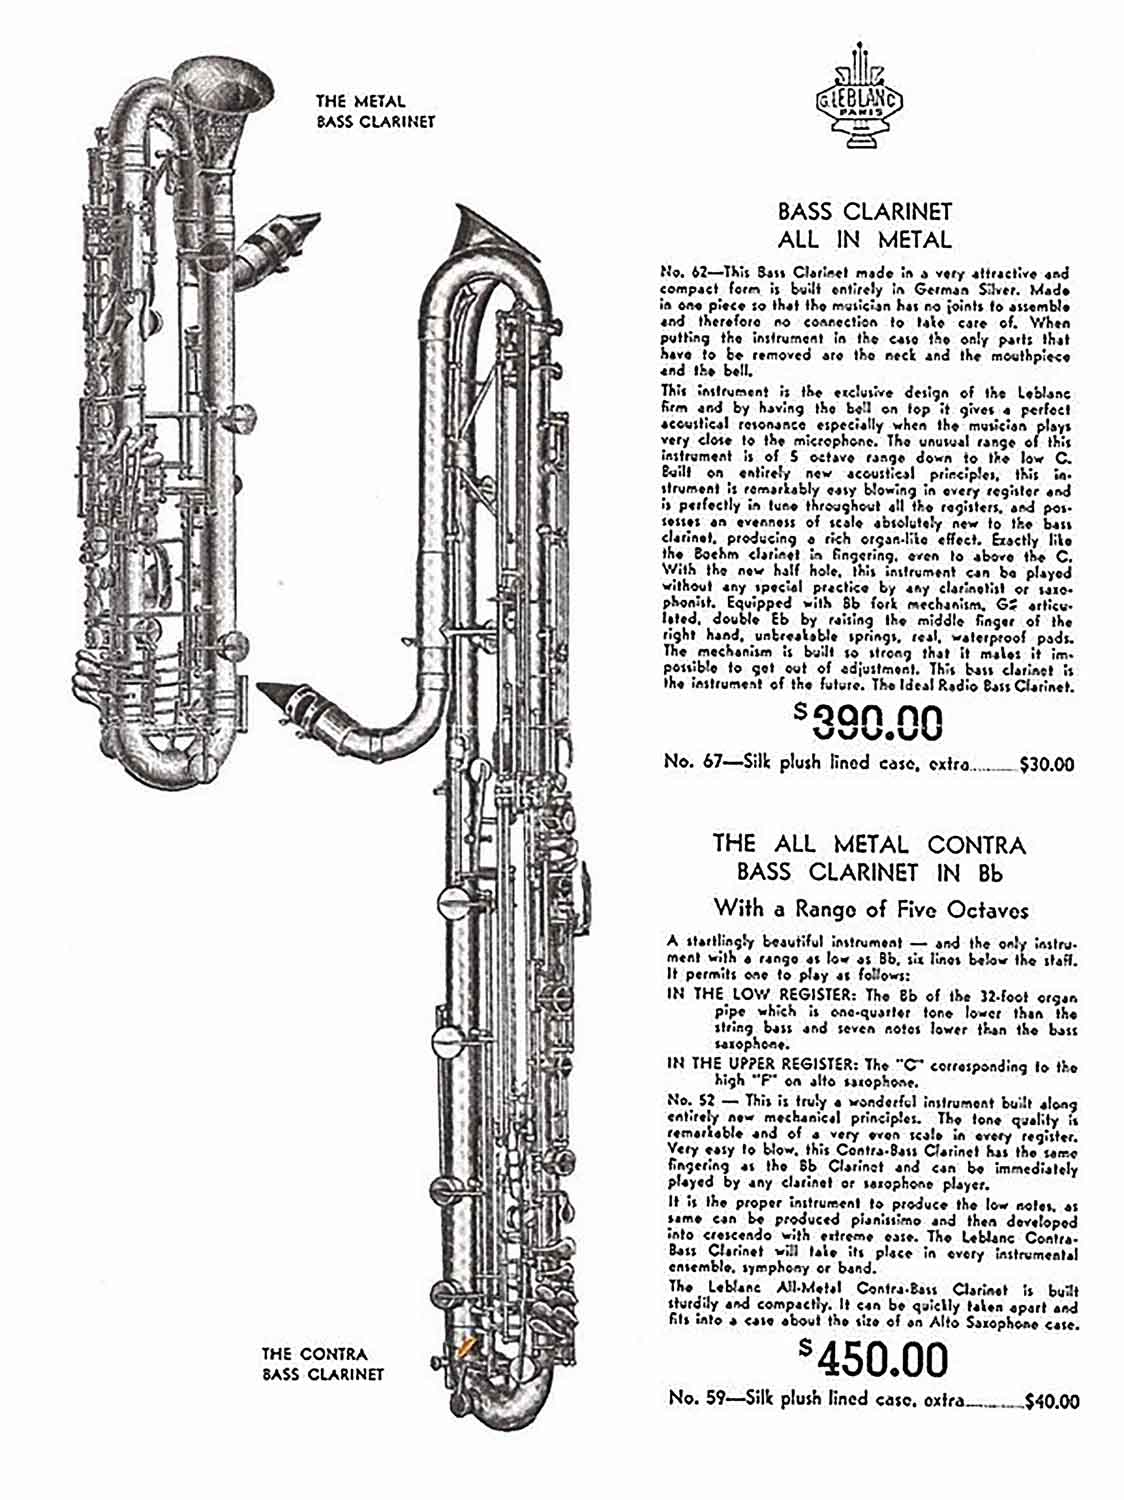 Valentin cases : affiche Leblanc USA de clarinette basse 390$ et contrebasse au prix de 450$. Le registre de la contrebasse est annoncé à cinq octaves.